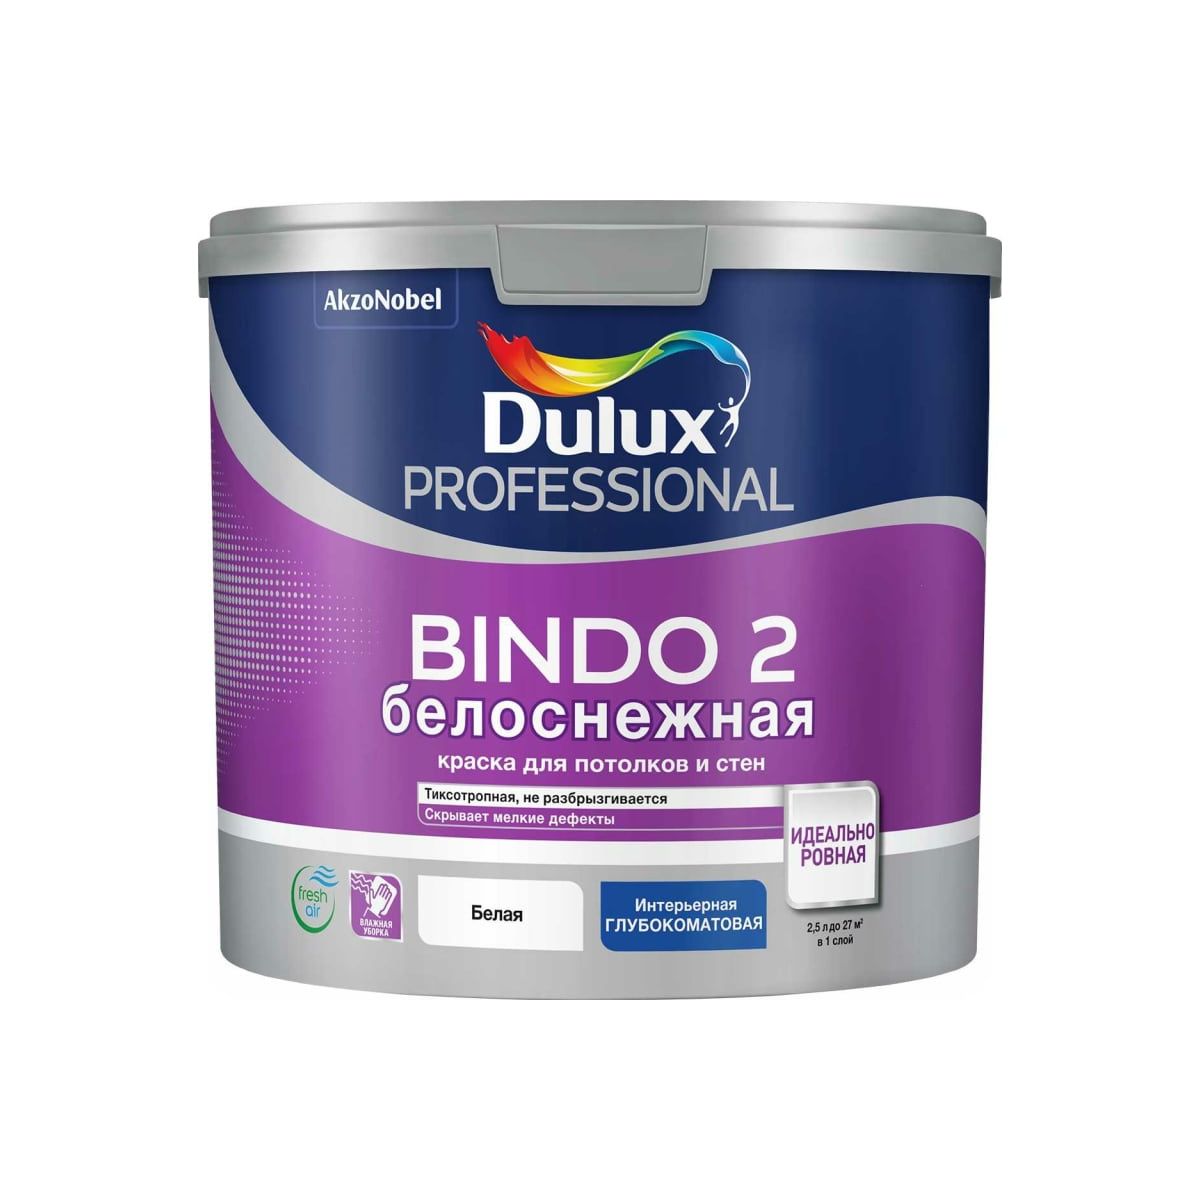 Краска для стен и потолков Dulux Professional Bindo 2 белоснежная, глубокоматовая, 2,5 л